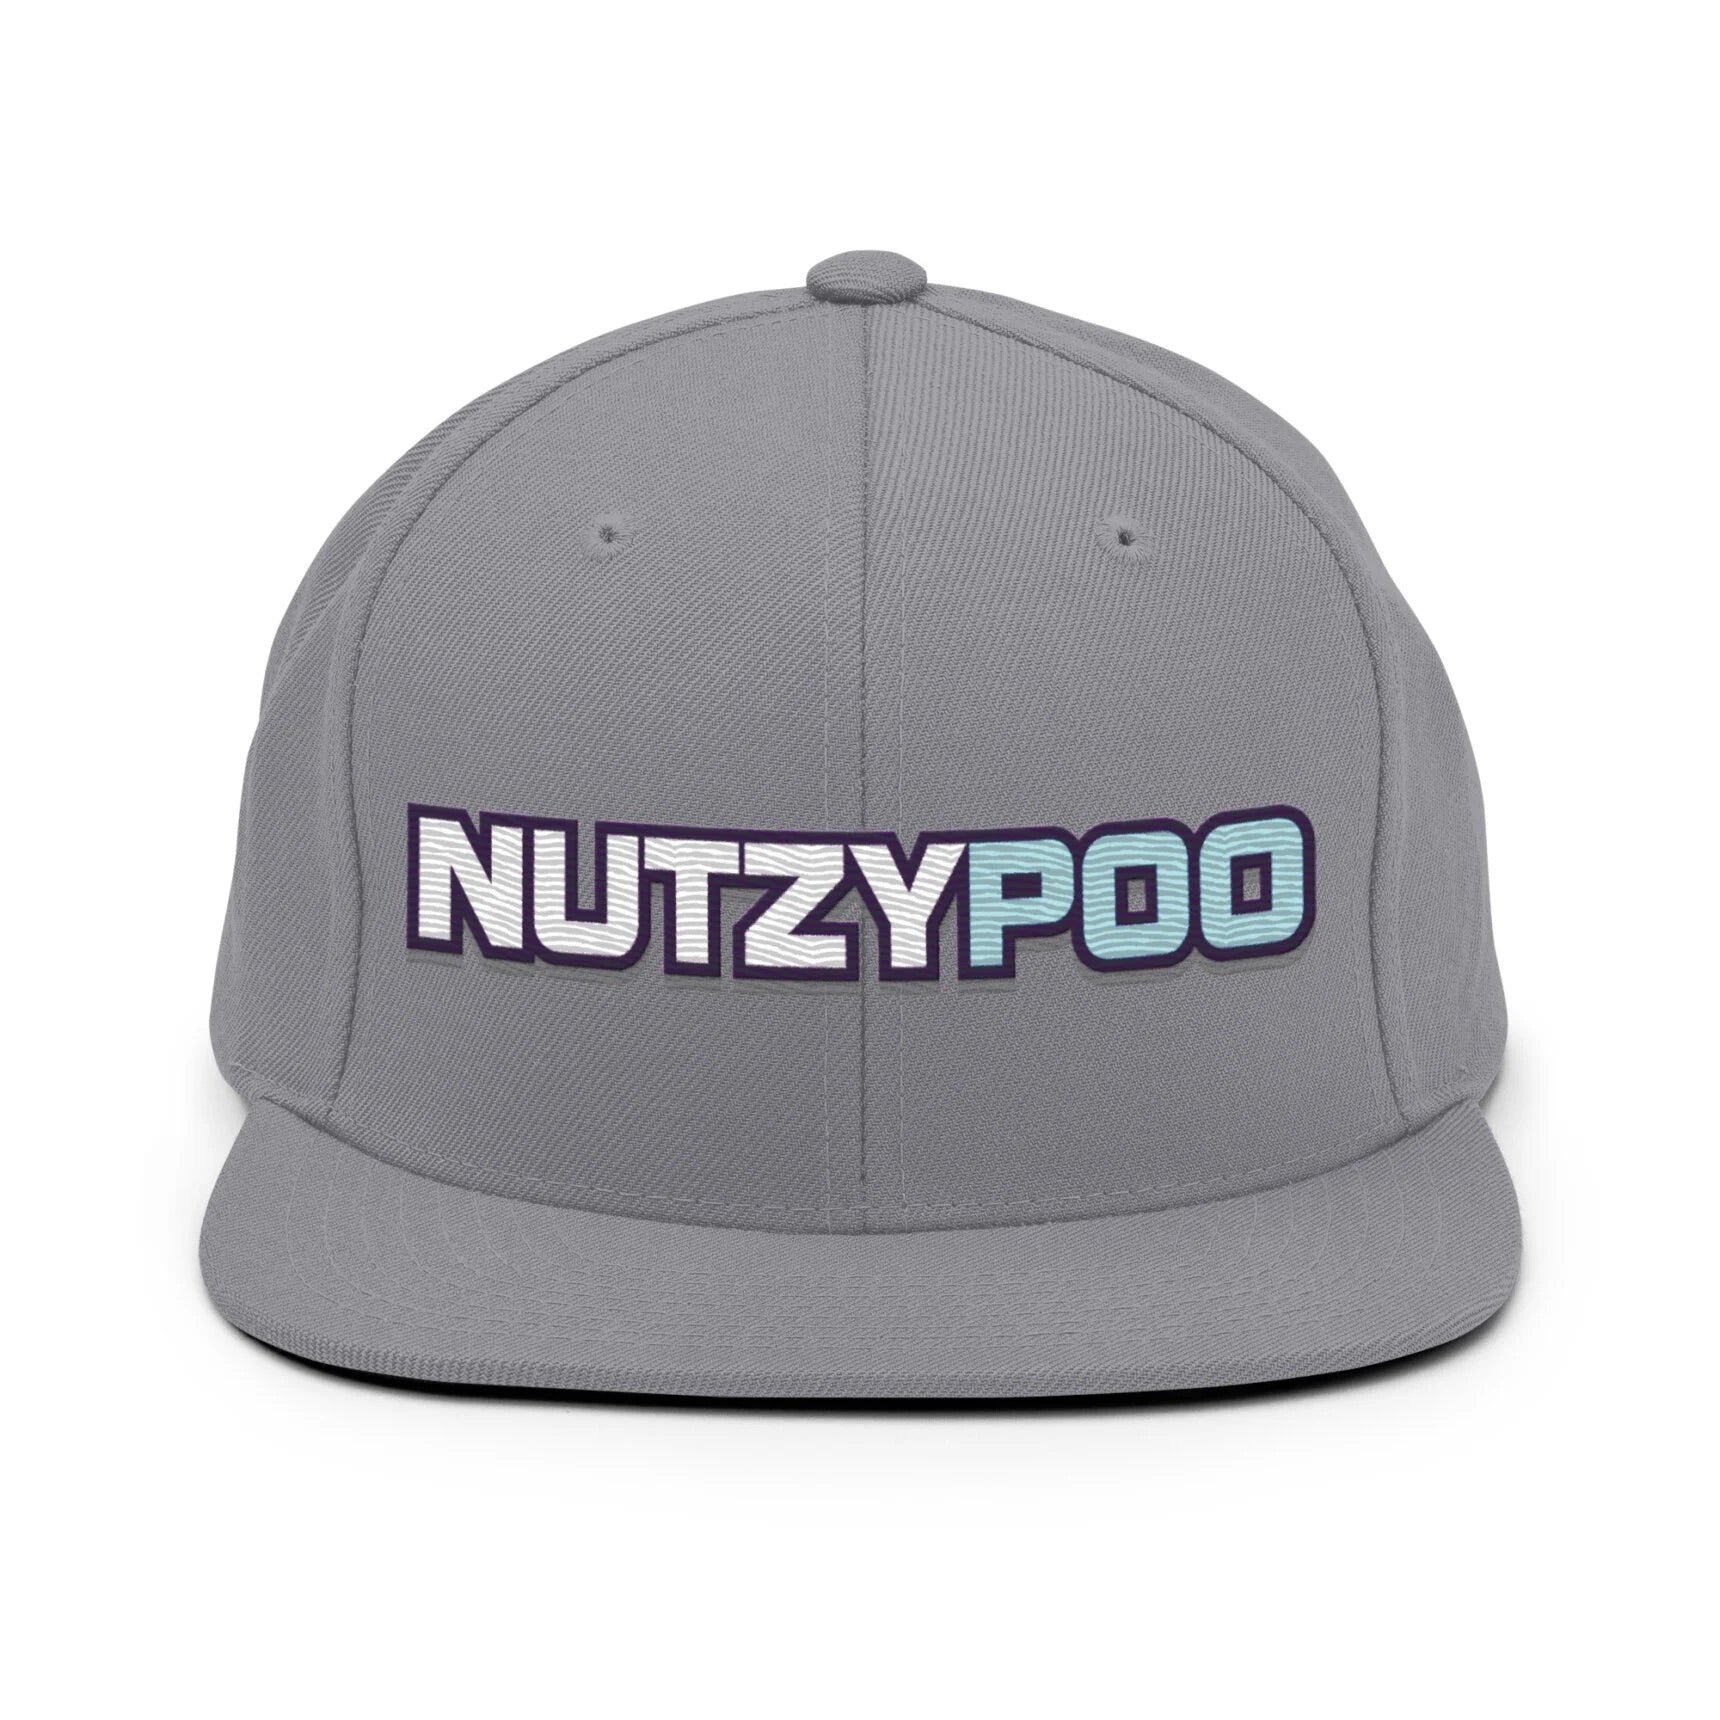 NutzyPoo ShowZone hat in grey